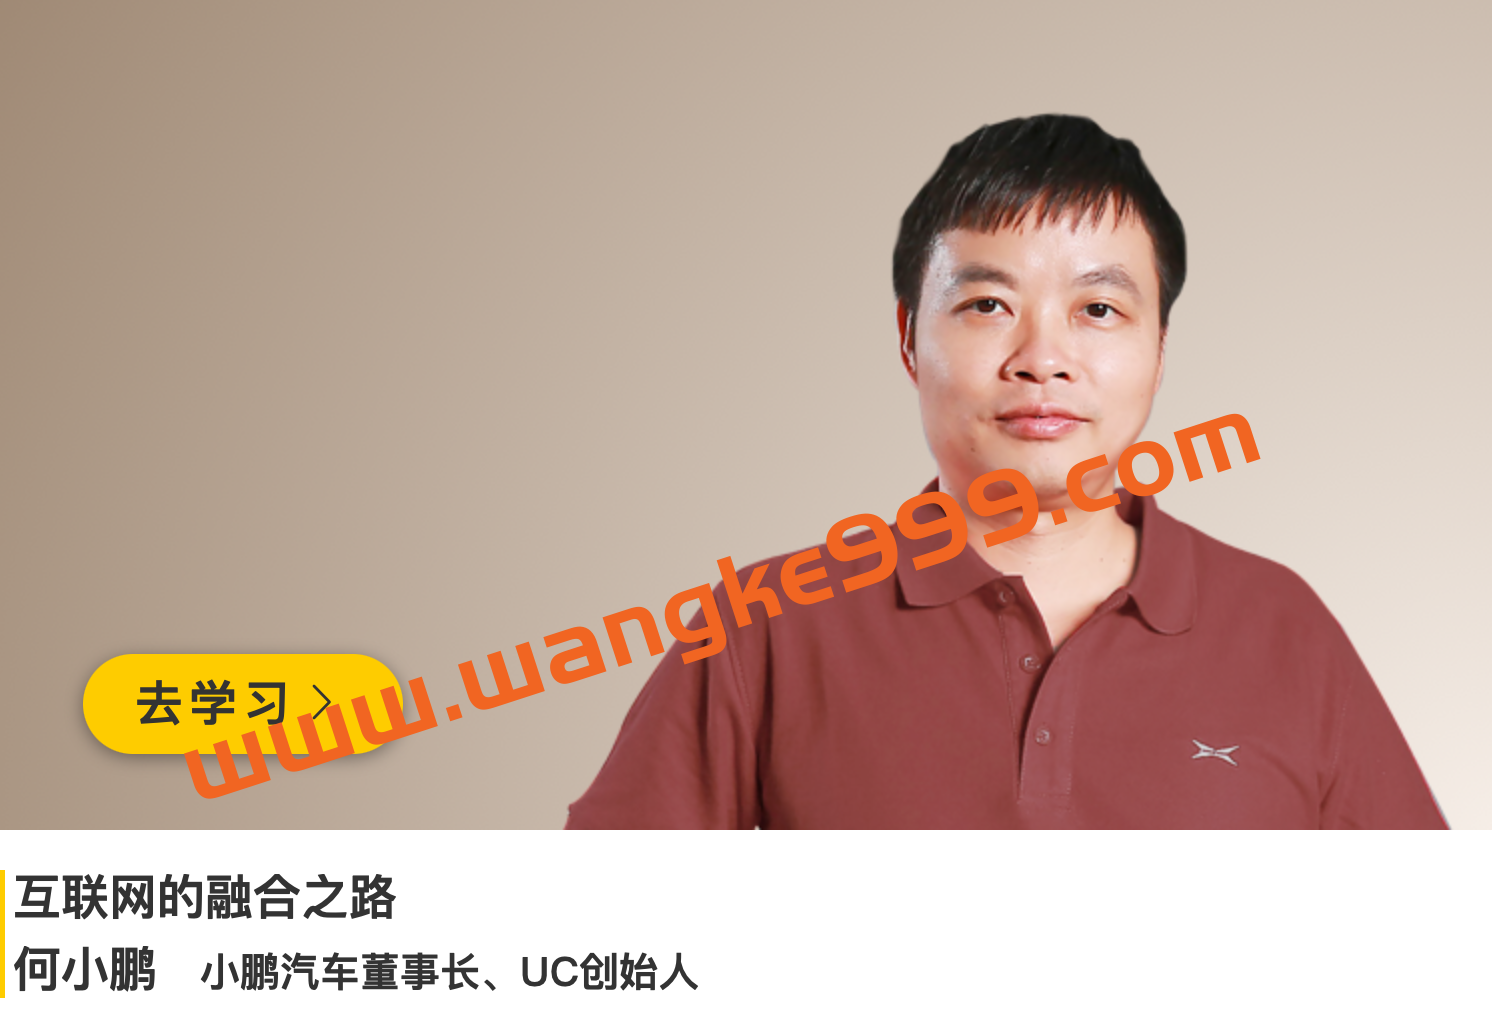 小鹏汽车董事长、UC创始人·何小鹏《互联网的融合之路》插图